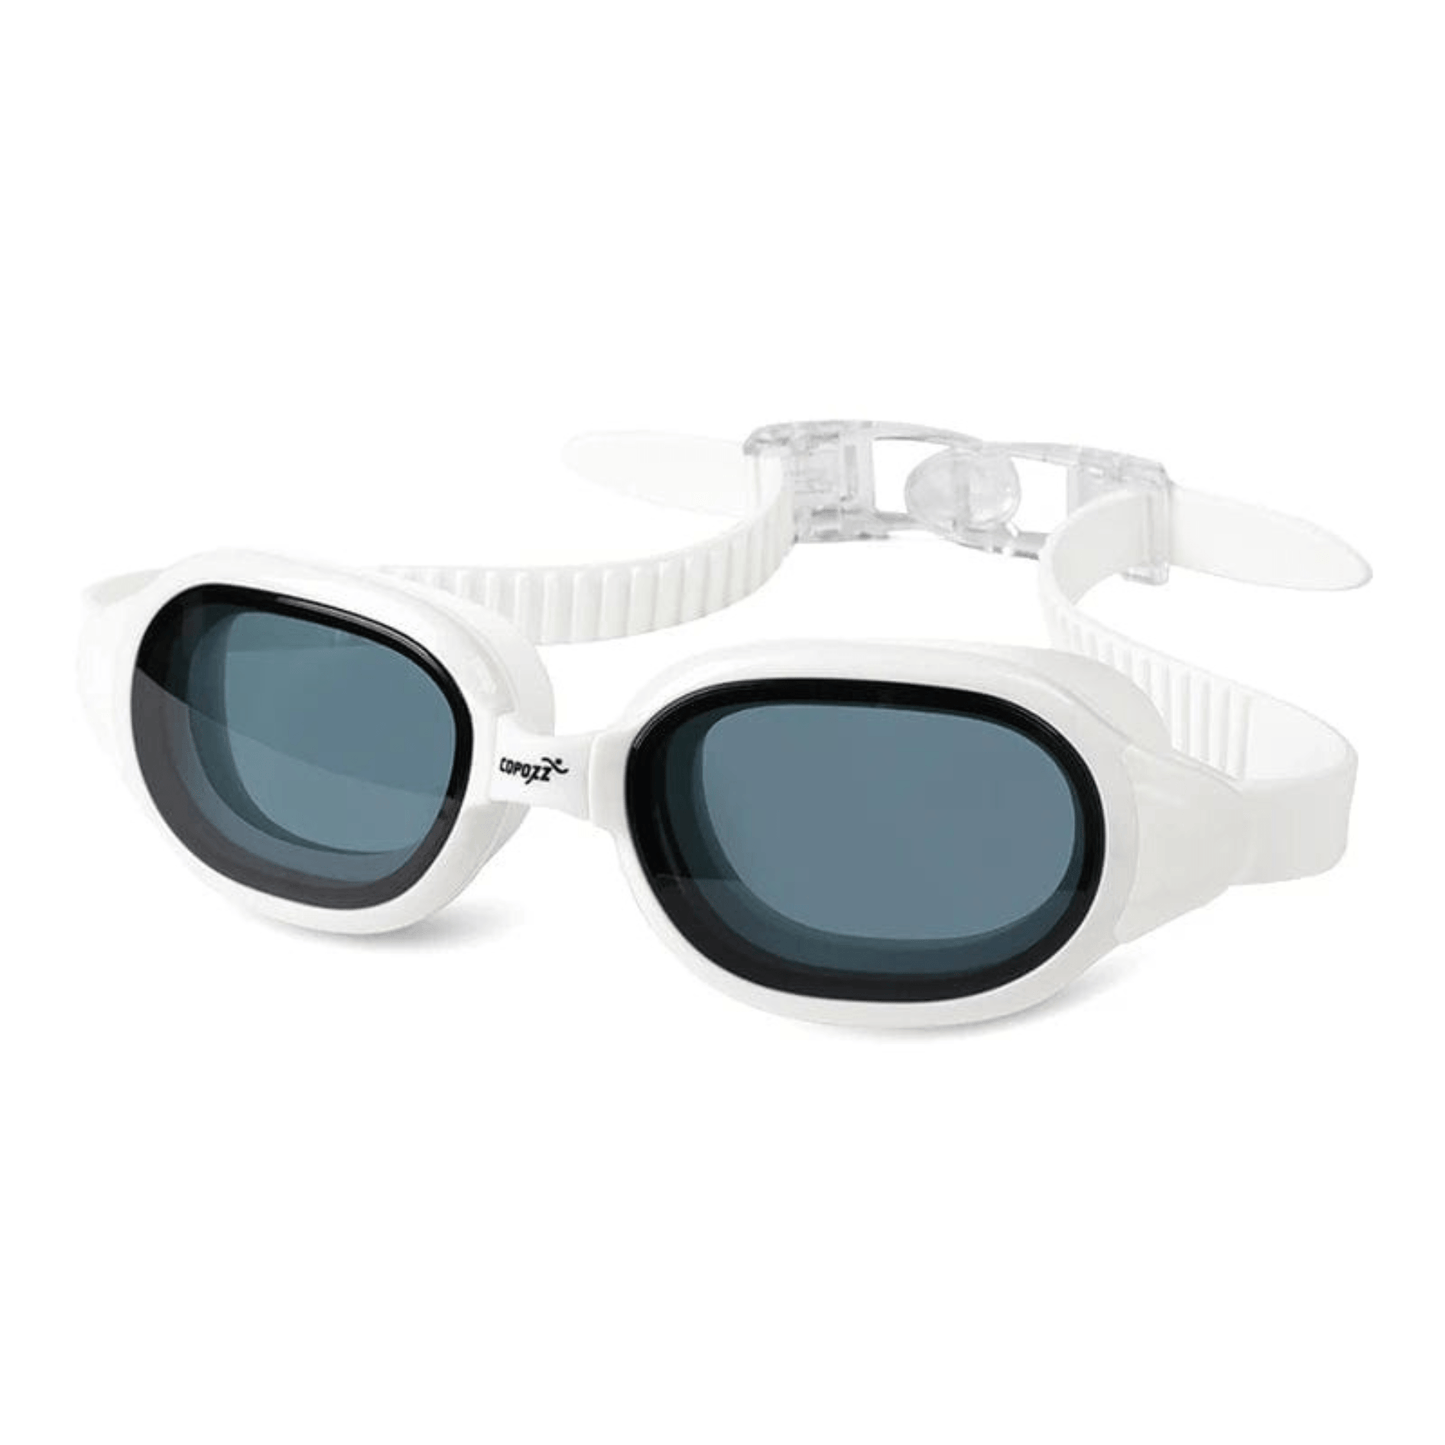 prescription goggles COPOZZ Swimming Goggles Myopia 0 -1.5 to -7 Men Women Anti fog UV Protecion Waterproof Swimming Glasses Diopter Swim Eyewear